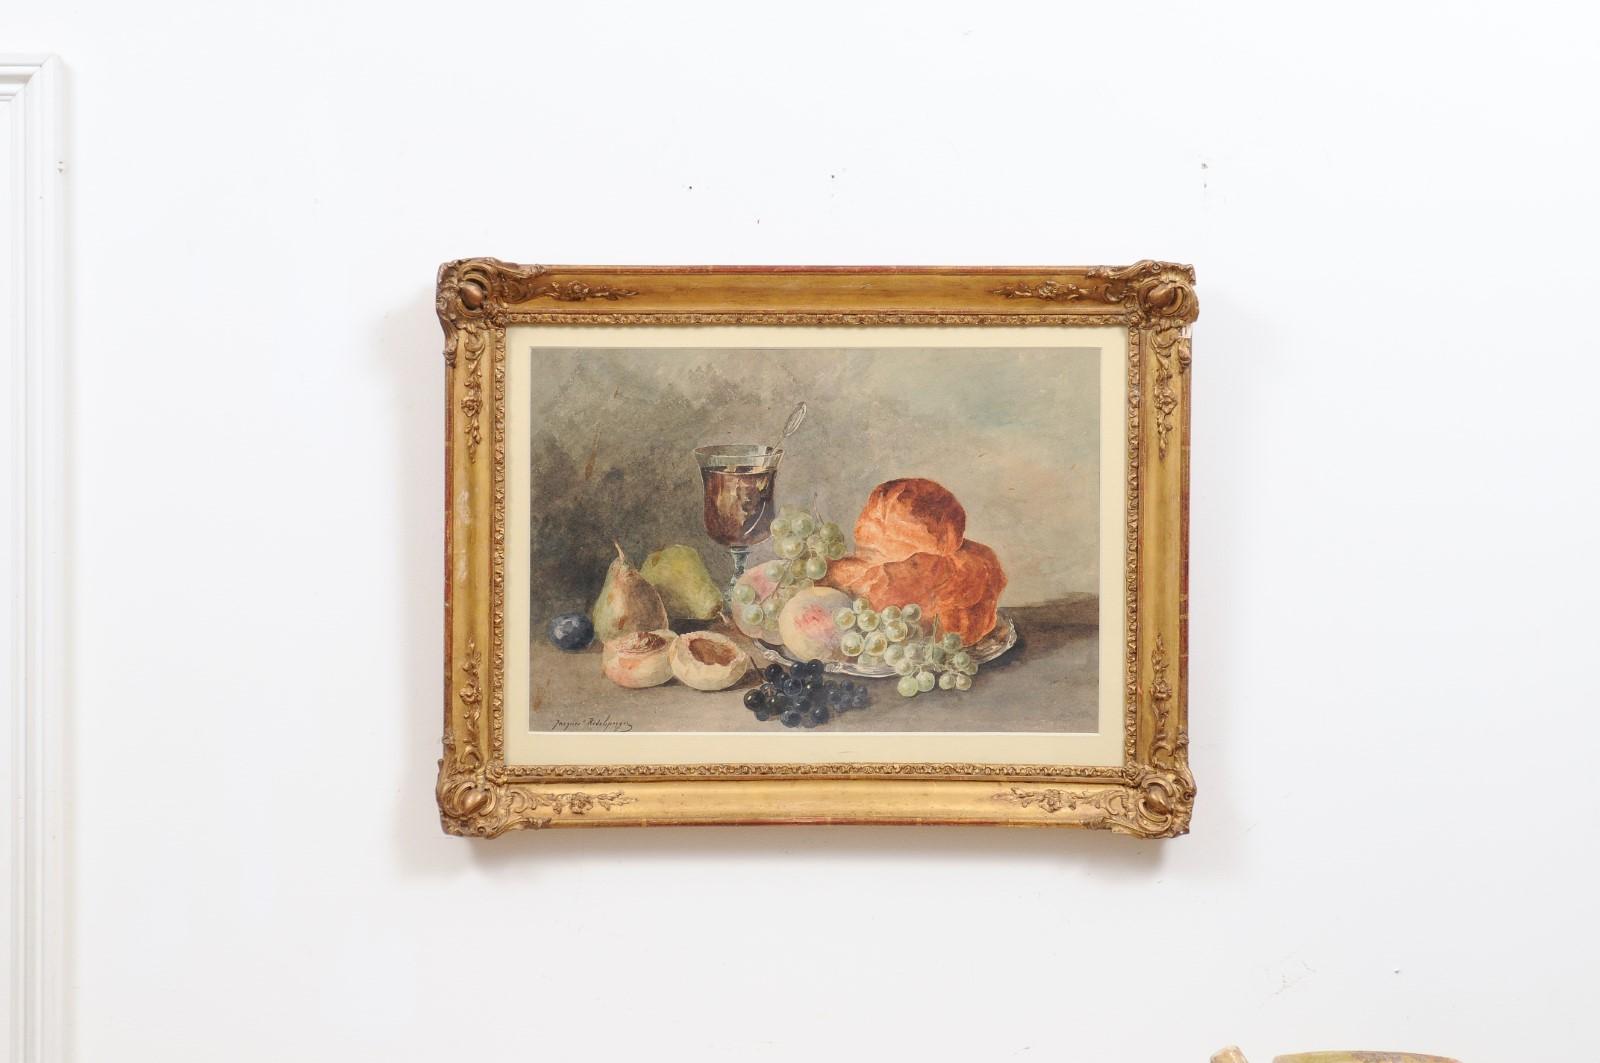 Une aquarelle française encadrée de nature morte de la fin du 19ème siècle, signée Jacques Redelsperger et dédicacée au dos. Créée en France dans le dernier quart du XIXe siècle, cette aquarelle encadrée représente des fruits appétissants, une